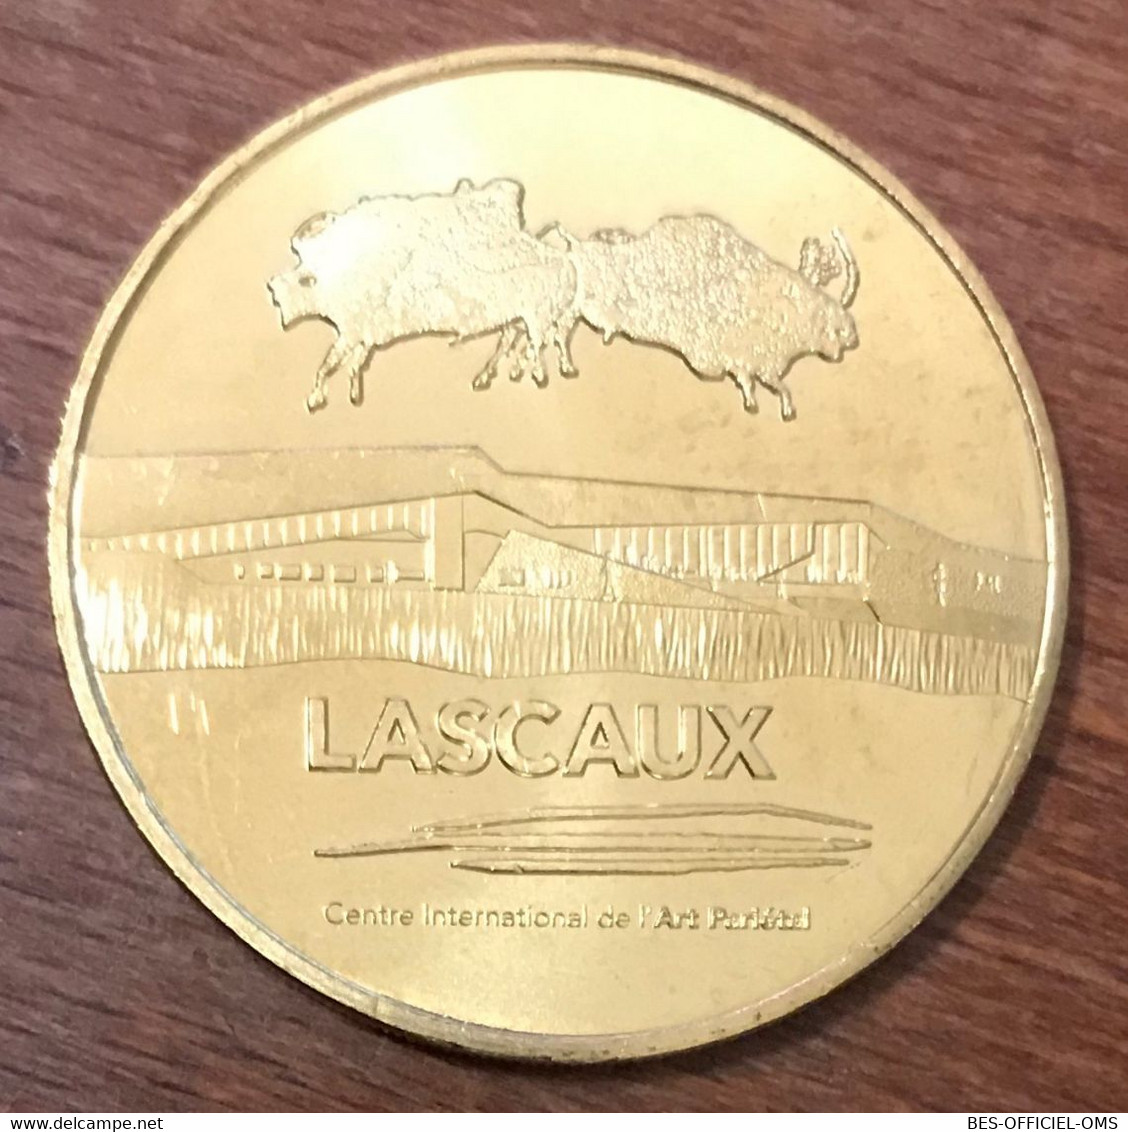 24 LASCAUX II BISONS ADOSSÉS MDP 2017 MEDAILLE SOUVENIR MONNAIE DE PARIS JETON TOURISTIQUE MEDALS COINS TOKENS - 2017